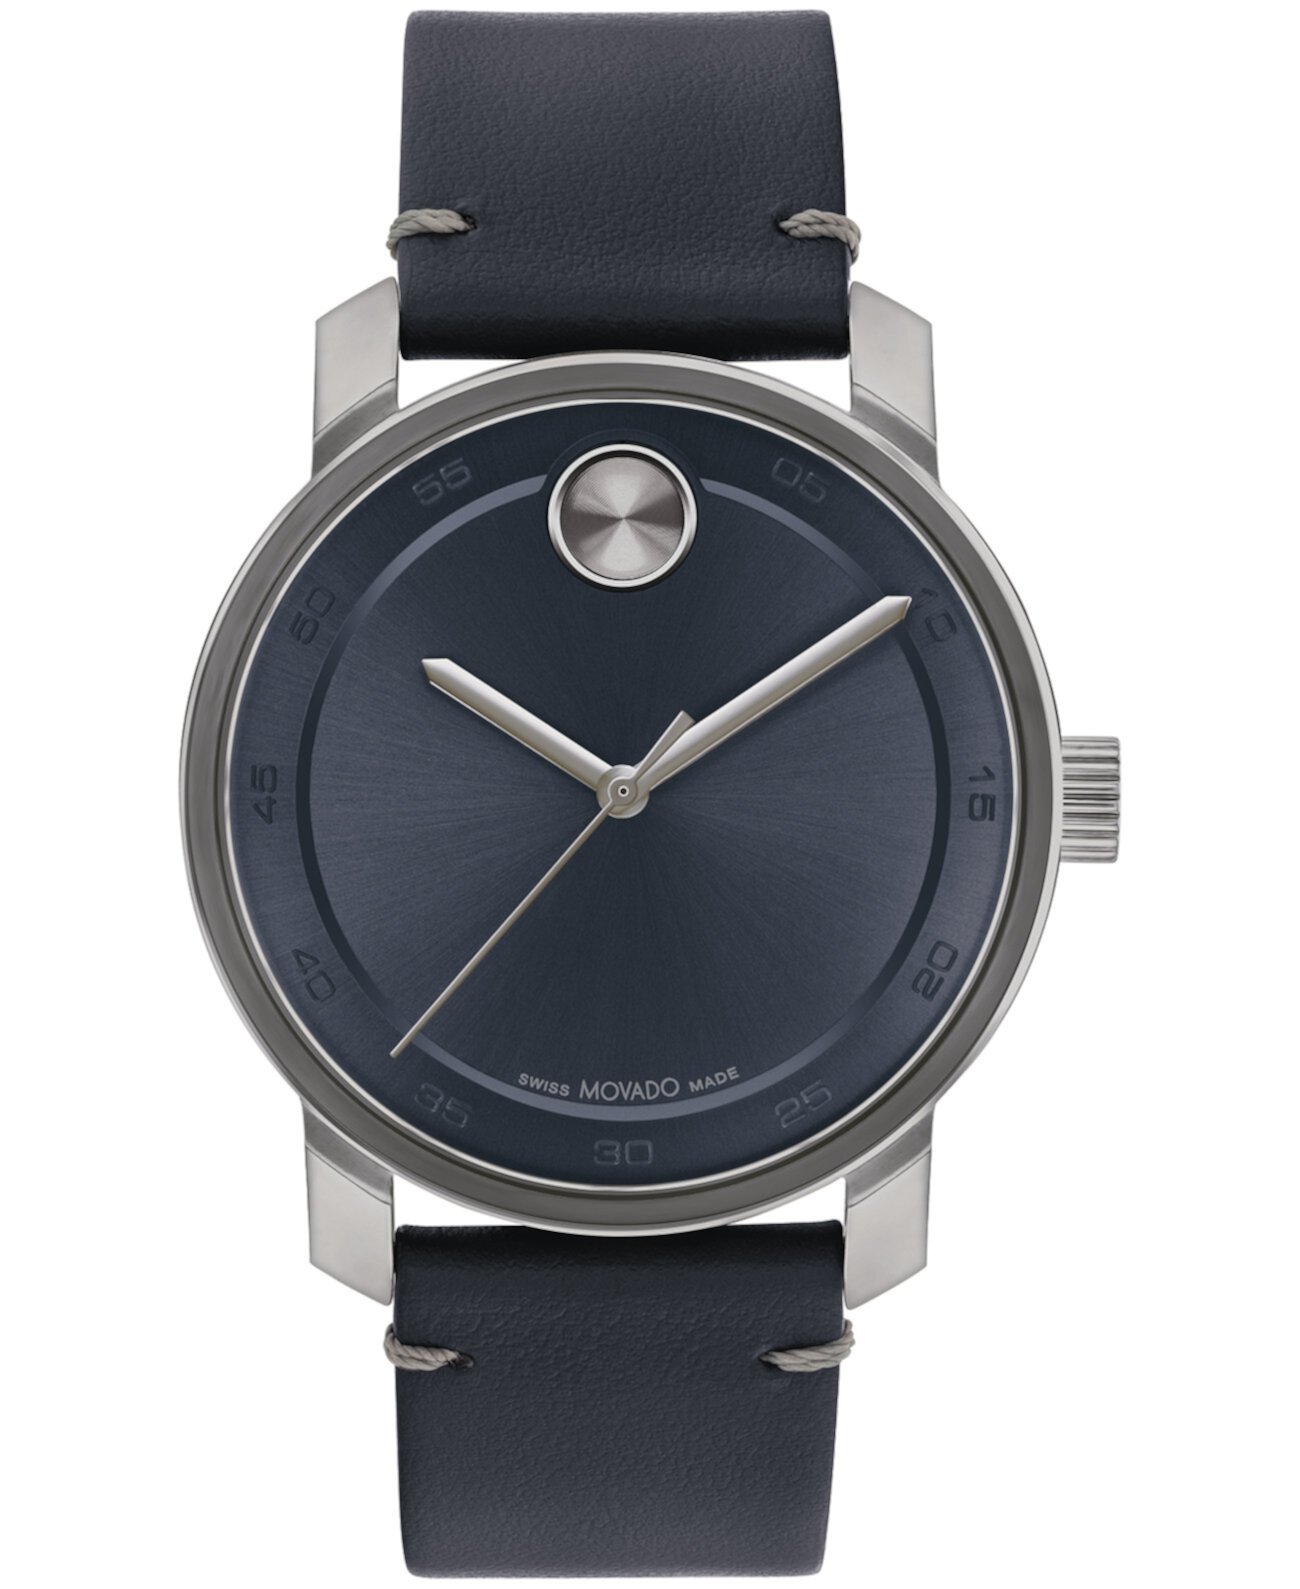 Мужские часы Bold Access, швейцарские кварцевые синие кожаные часы, 41 мм Movado